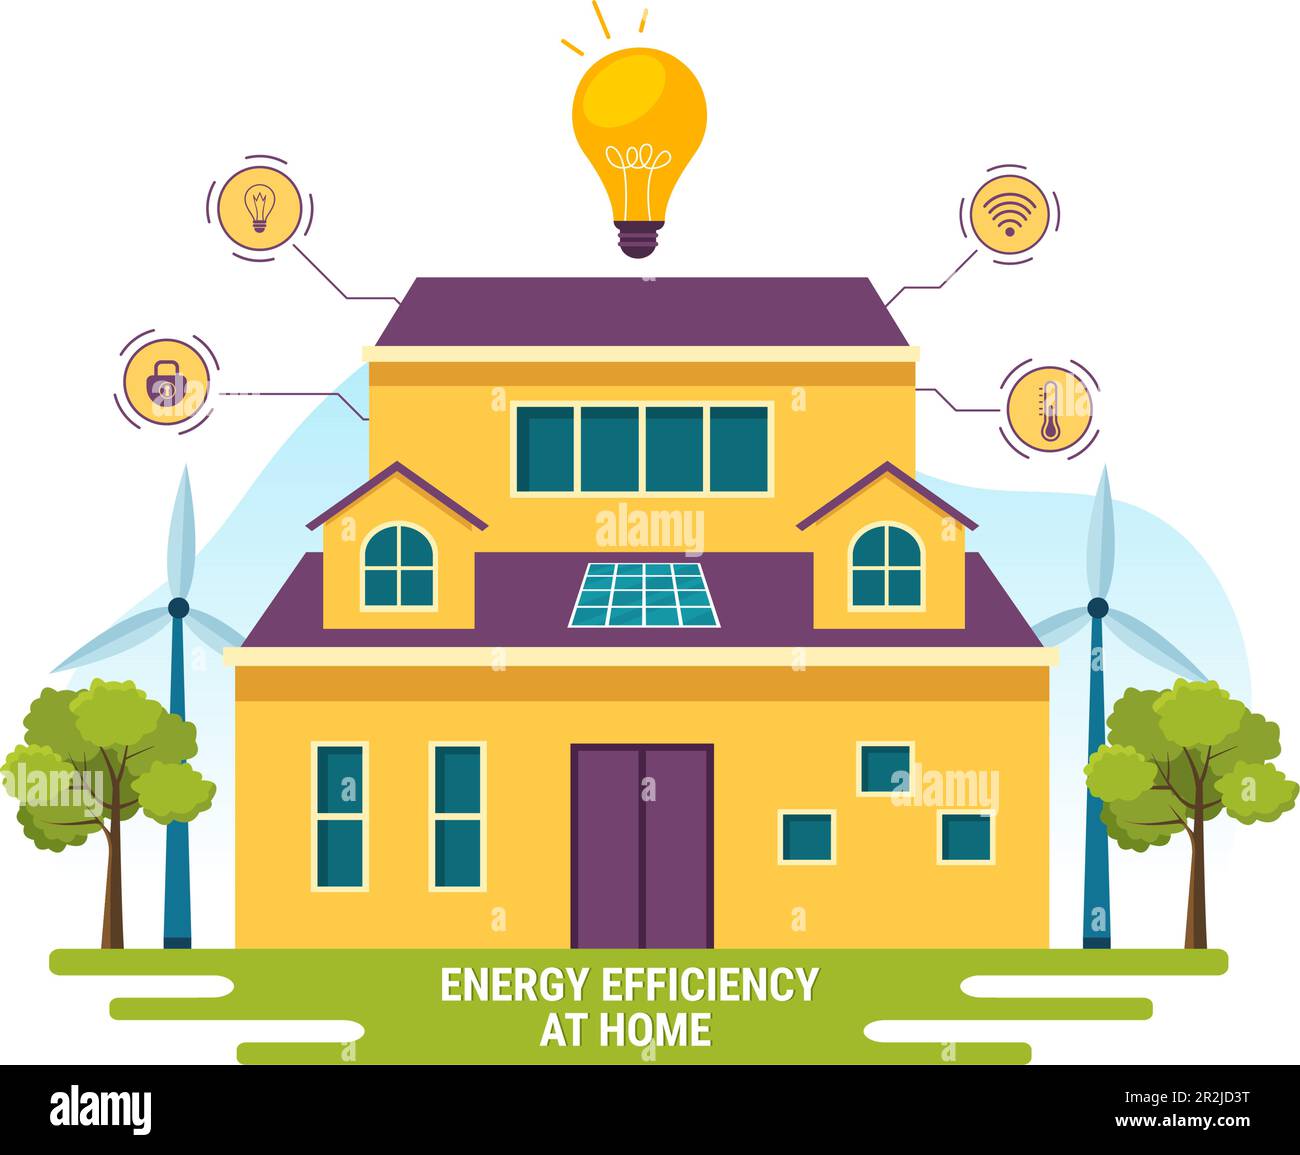 Efficacité énergétique à la maison Vector Illustration du système de technologie Smart House avec contrôle centralisé dans les modèles de dessin main de dessin animé à plat Illustration de Vecteur